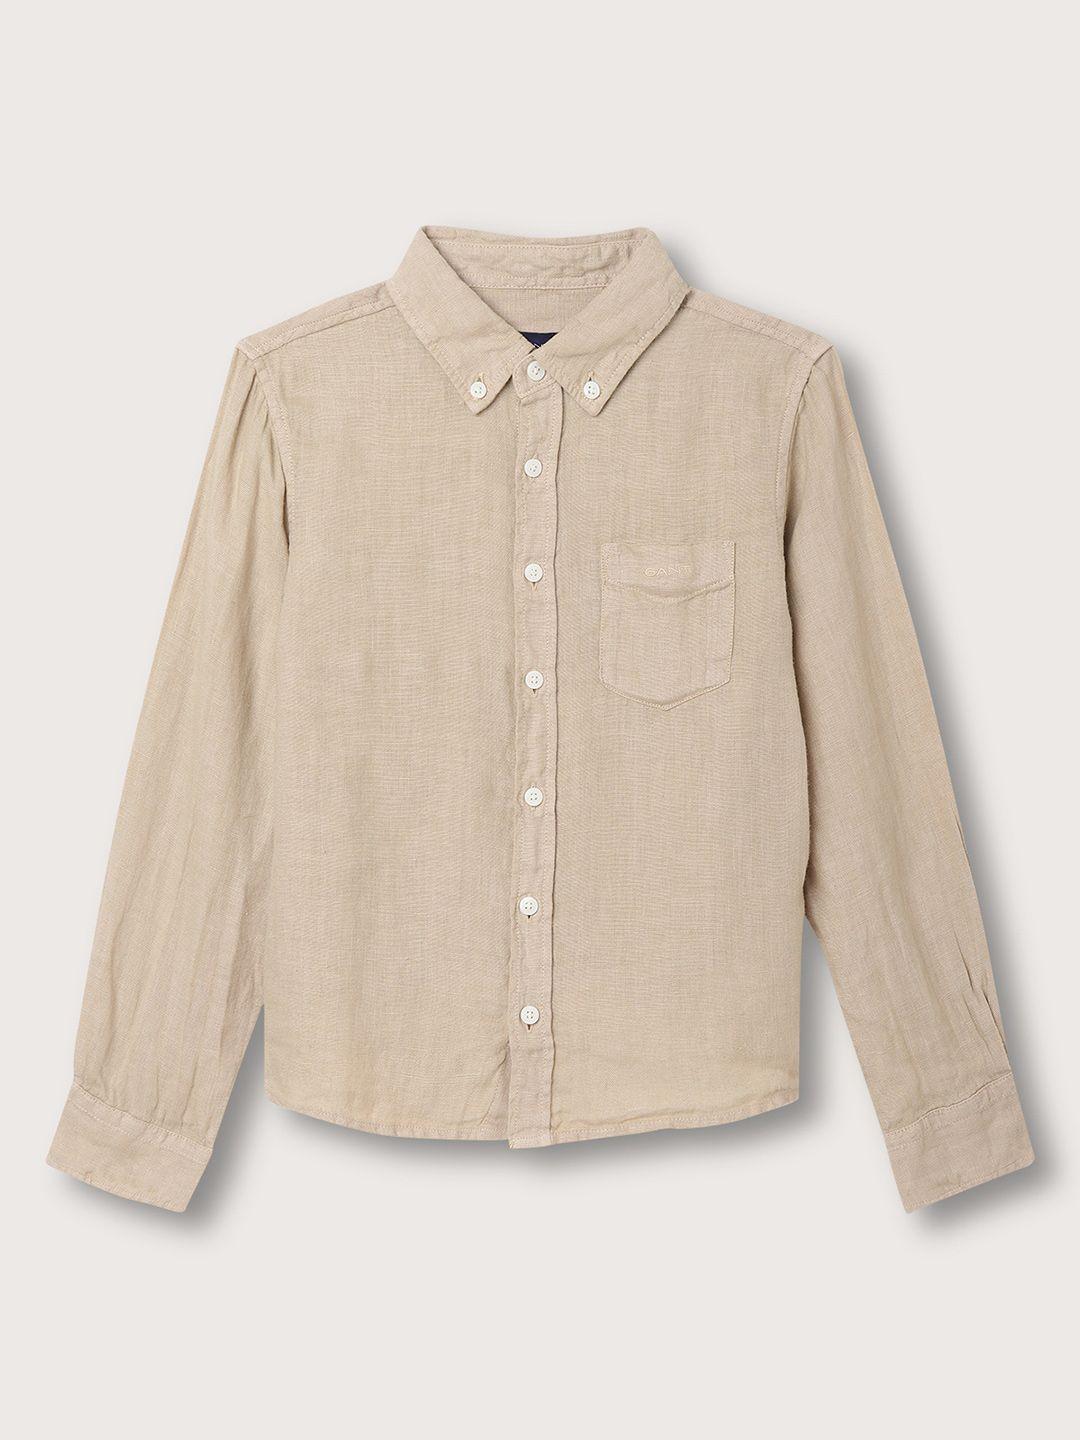 gant-boys-spread-collar-linen-casual-shirt